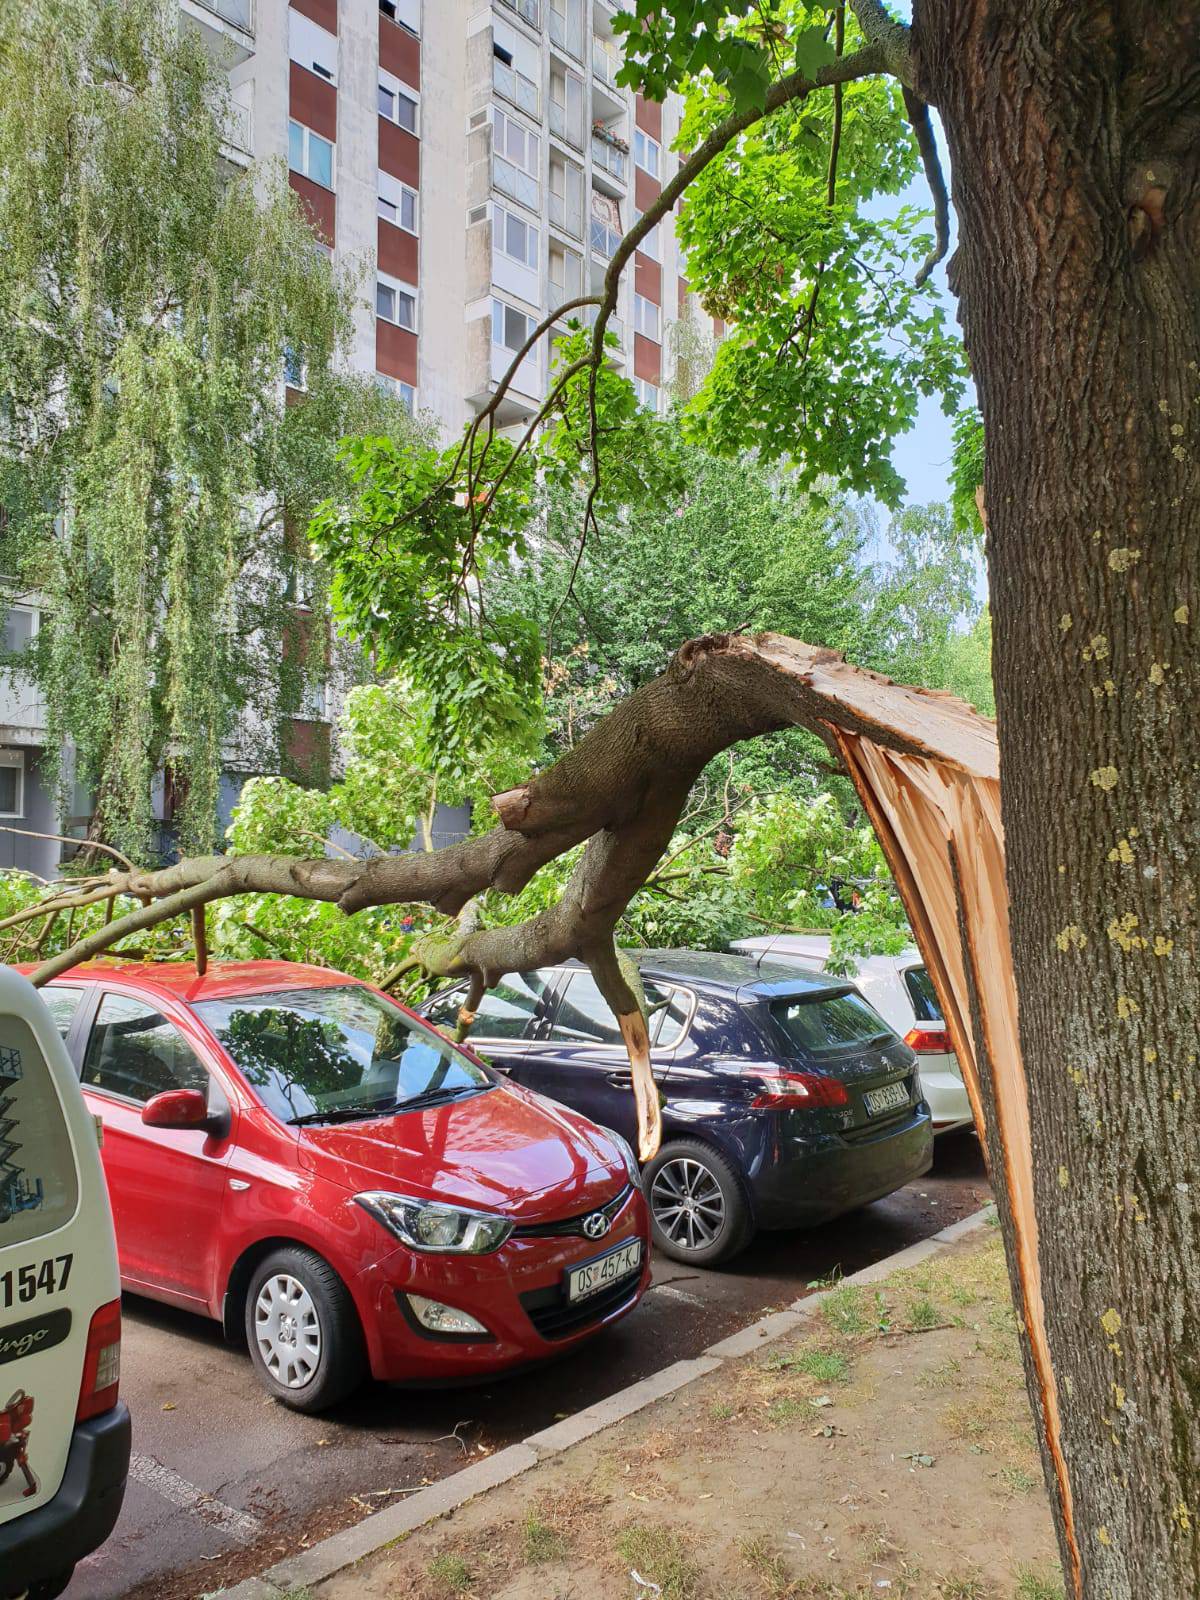 Grana oštetila aute u Osijeku: 'Nije prvi put, često se događa'